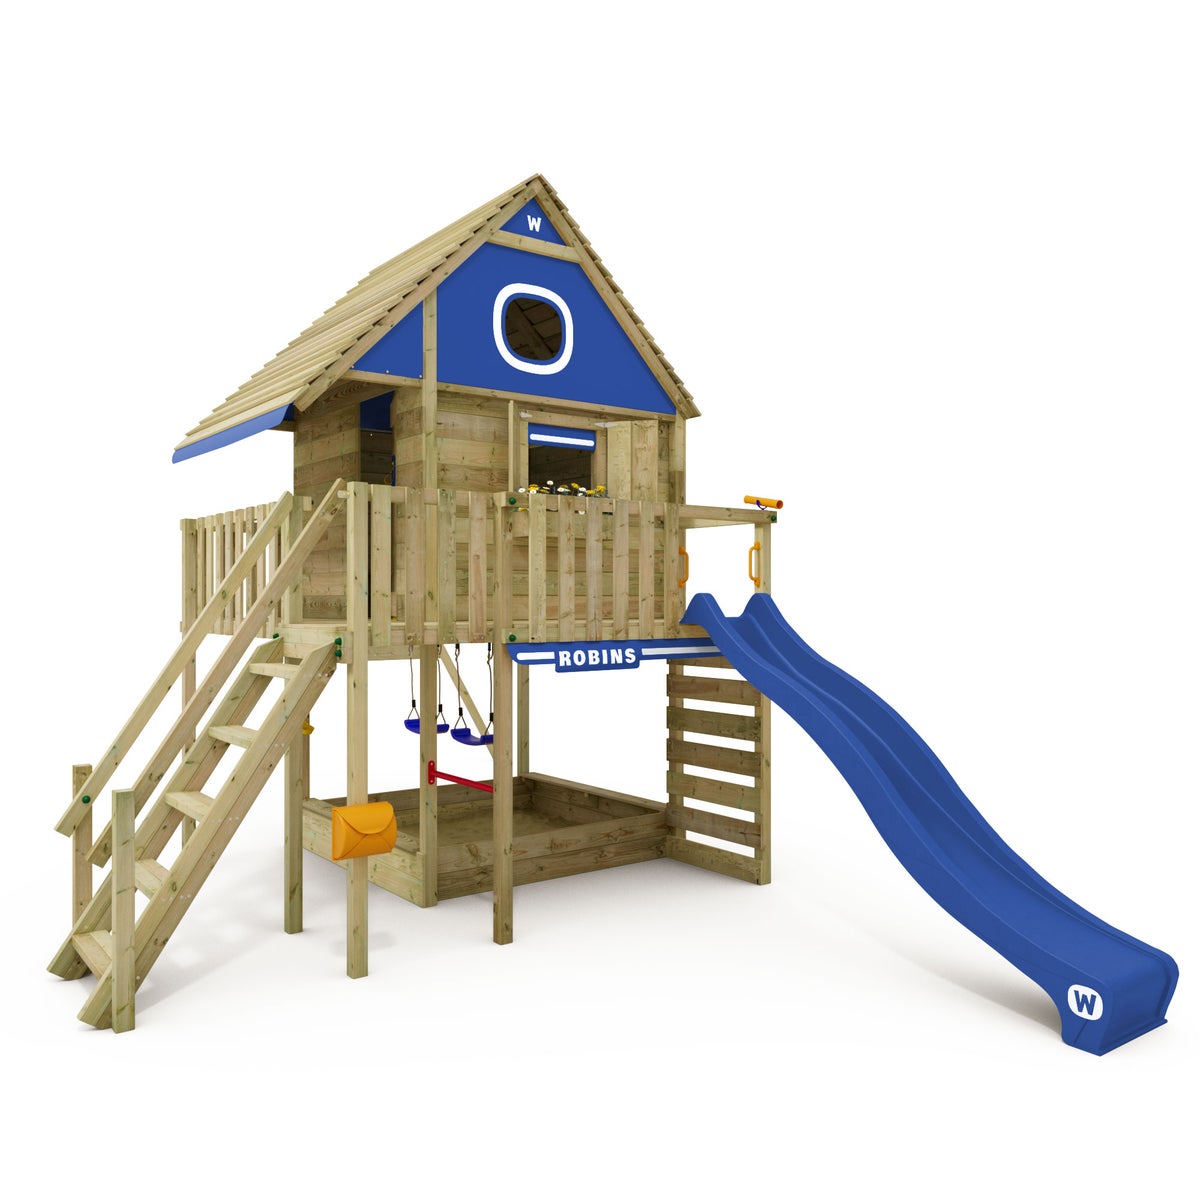 WICKEY Stelzenhaus Smart LakeHouse mit Schaukel und Rutsche,integriertem Sandkasten und großem Spielhaus mit massiver Treppe mit Handlauf, Fenstern, Rollos und Blumenkasten -  blau